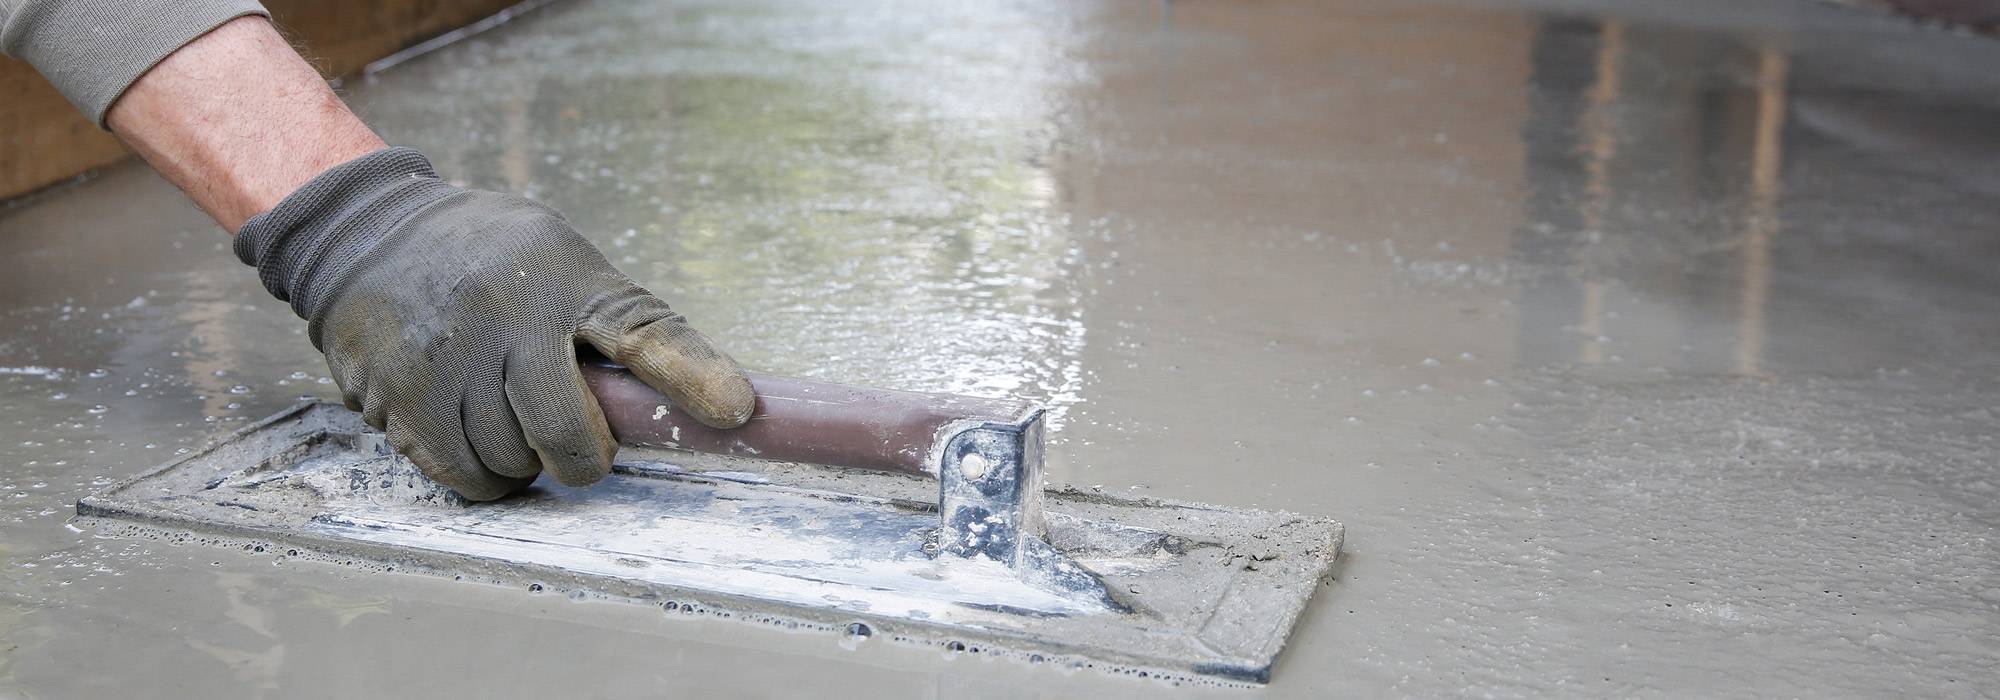 Как железнить бетонный пол цементом: порядок работ